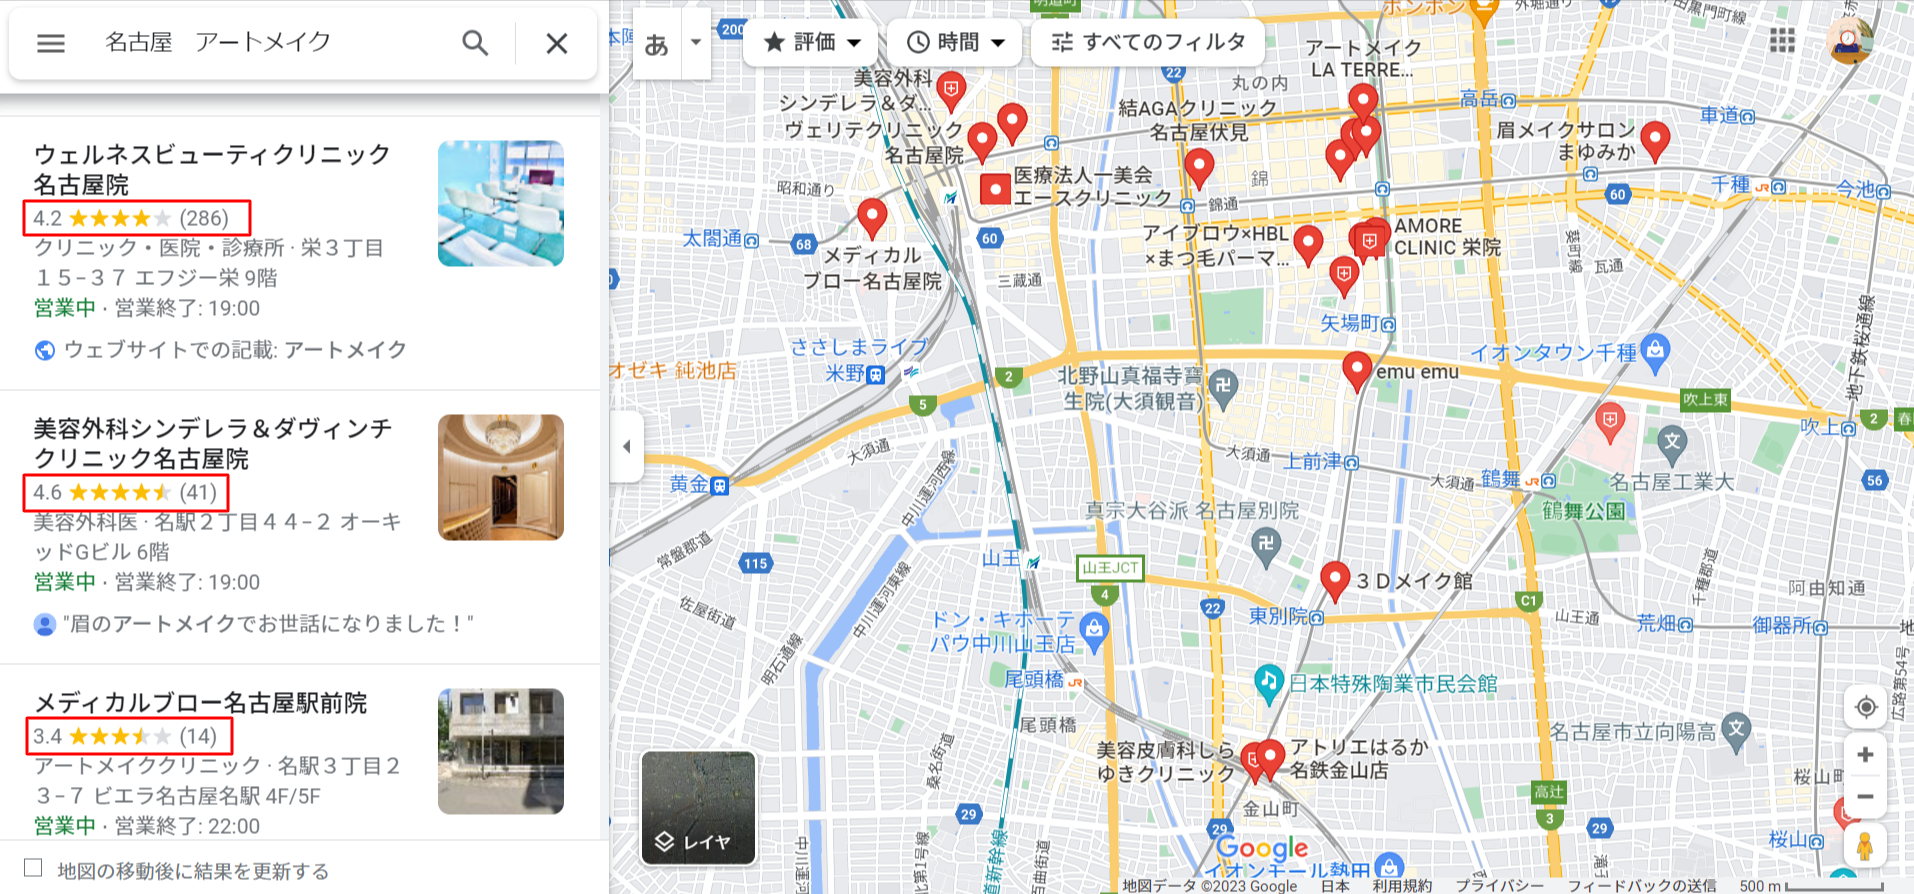 名古屋-アートメイク-Google-マップ